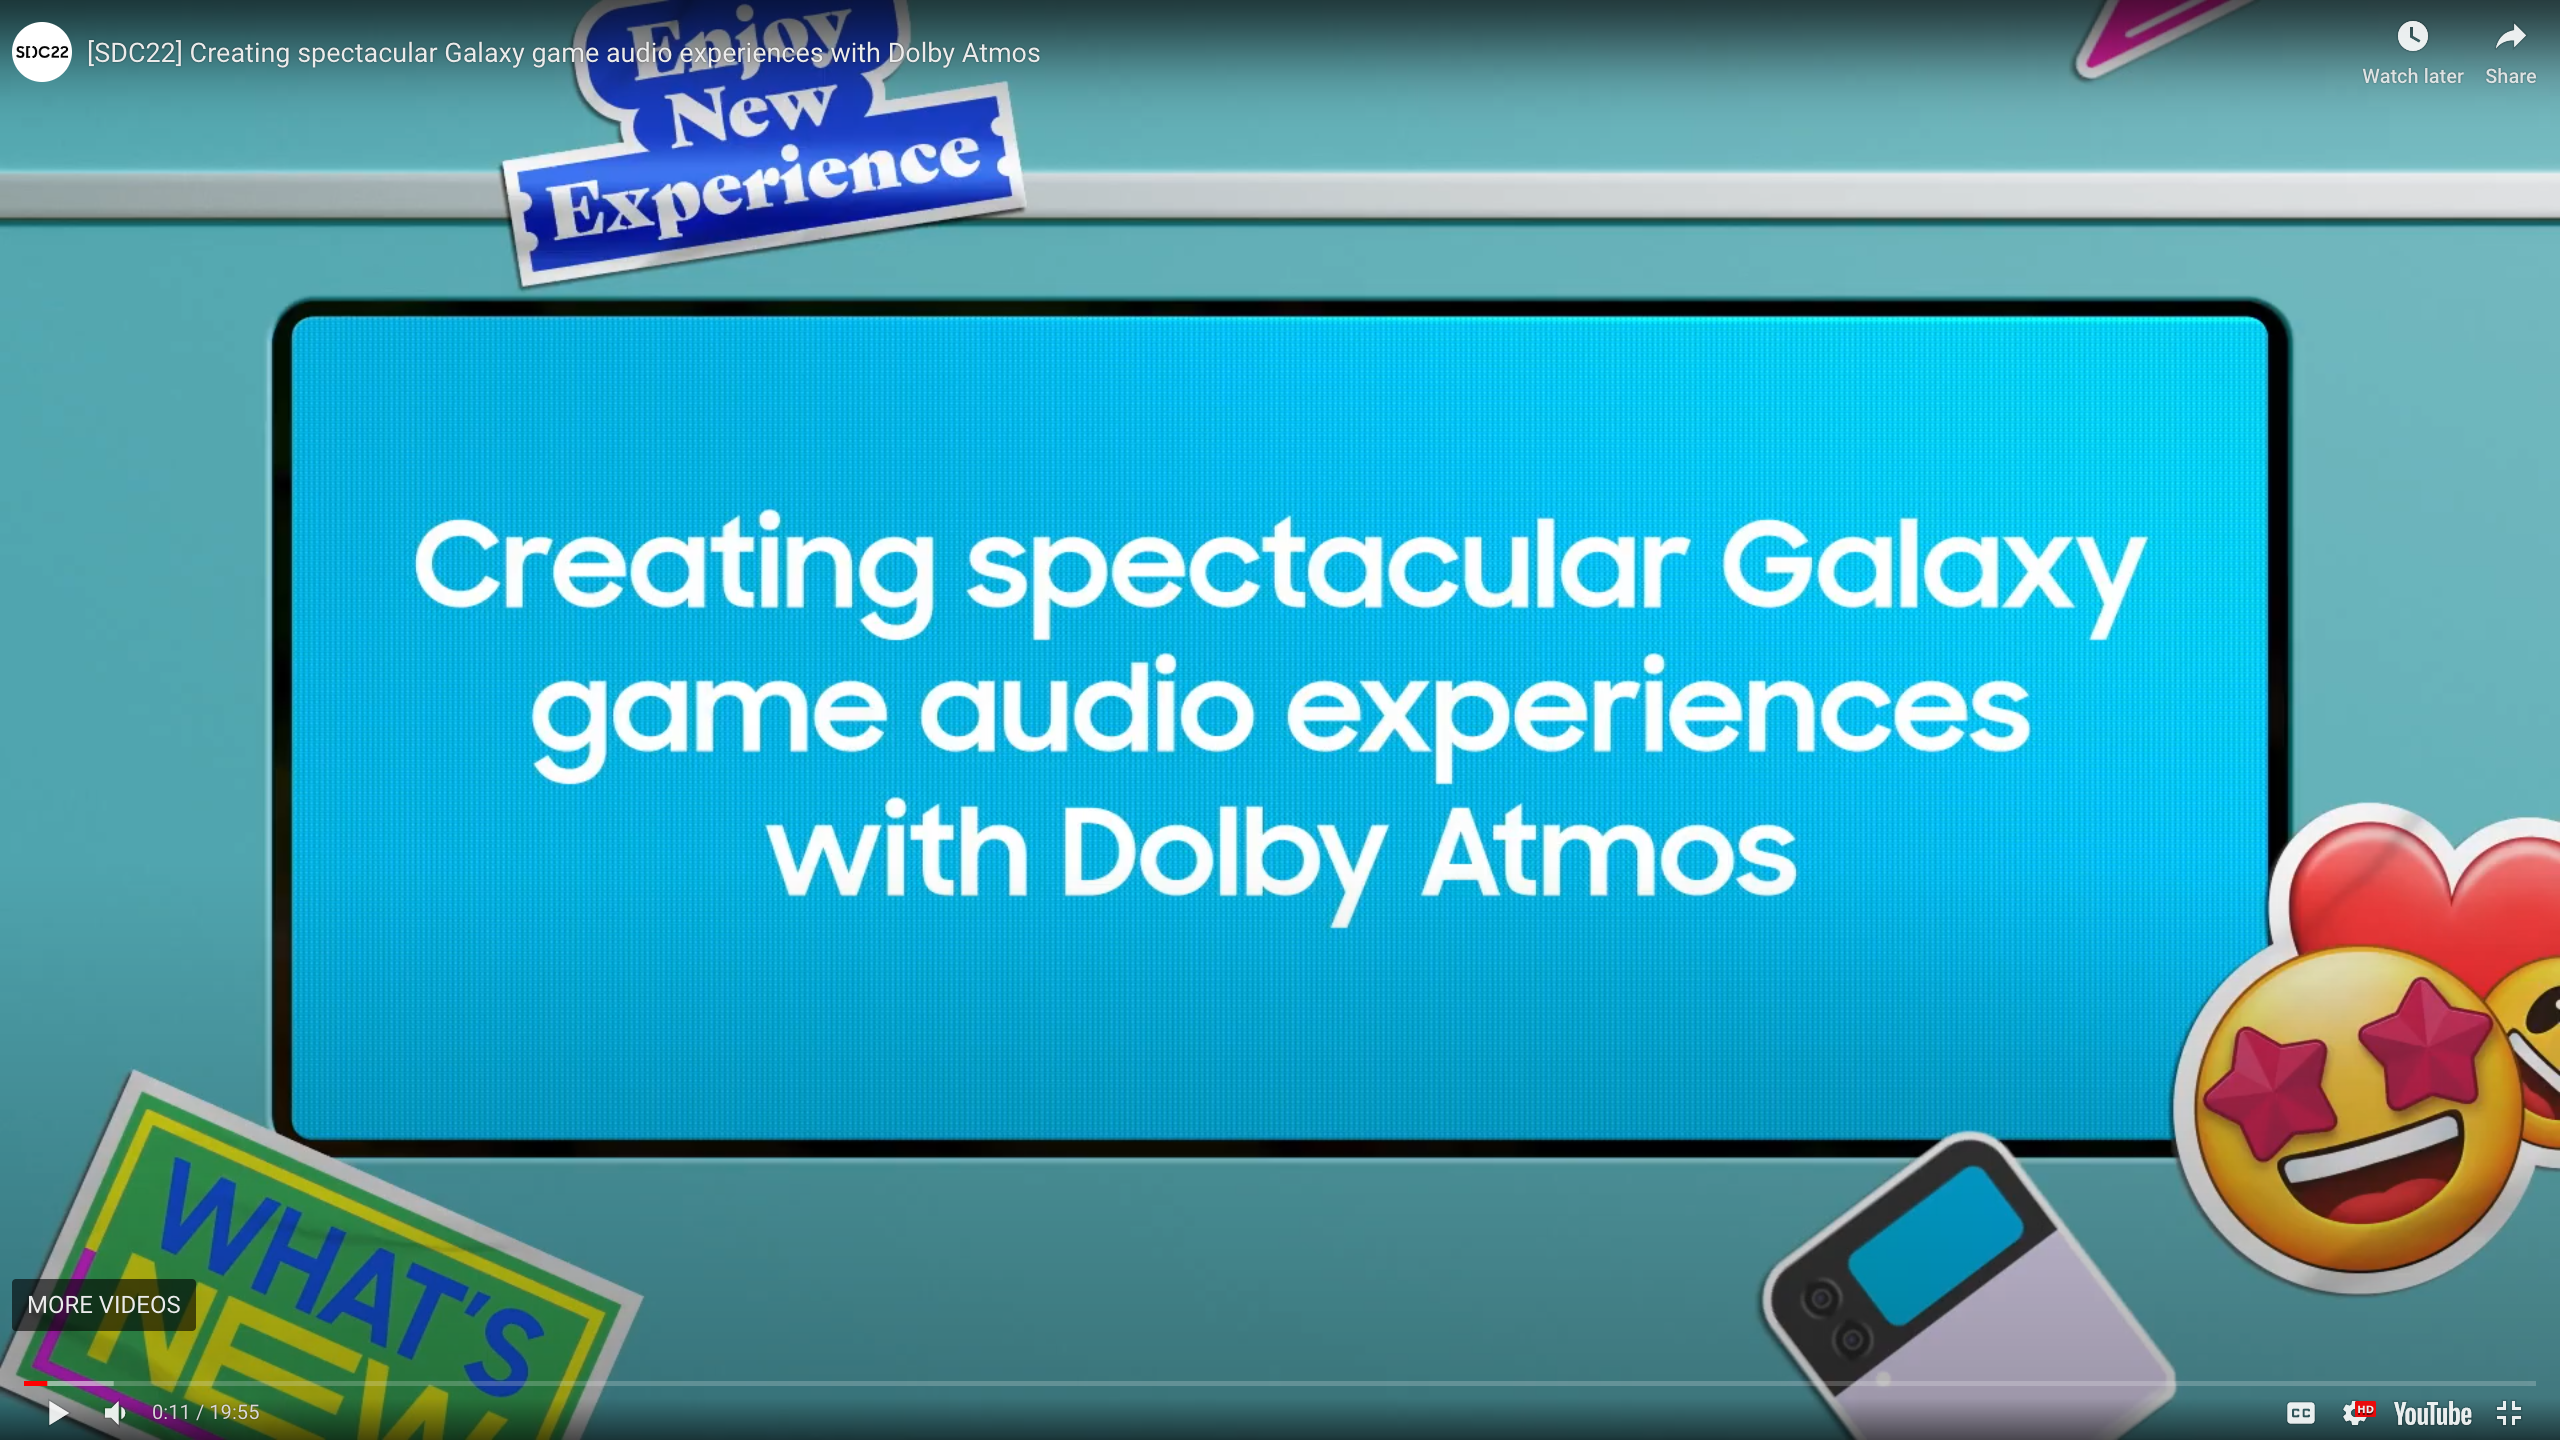 Dolby Atmos @ SDC